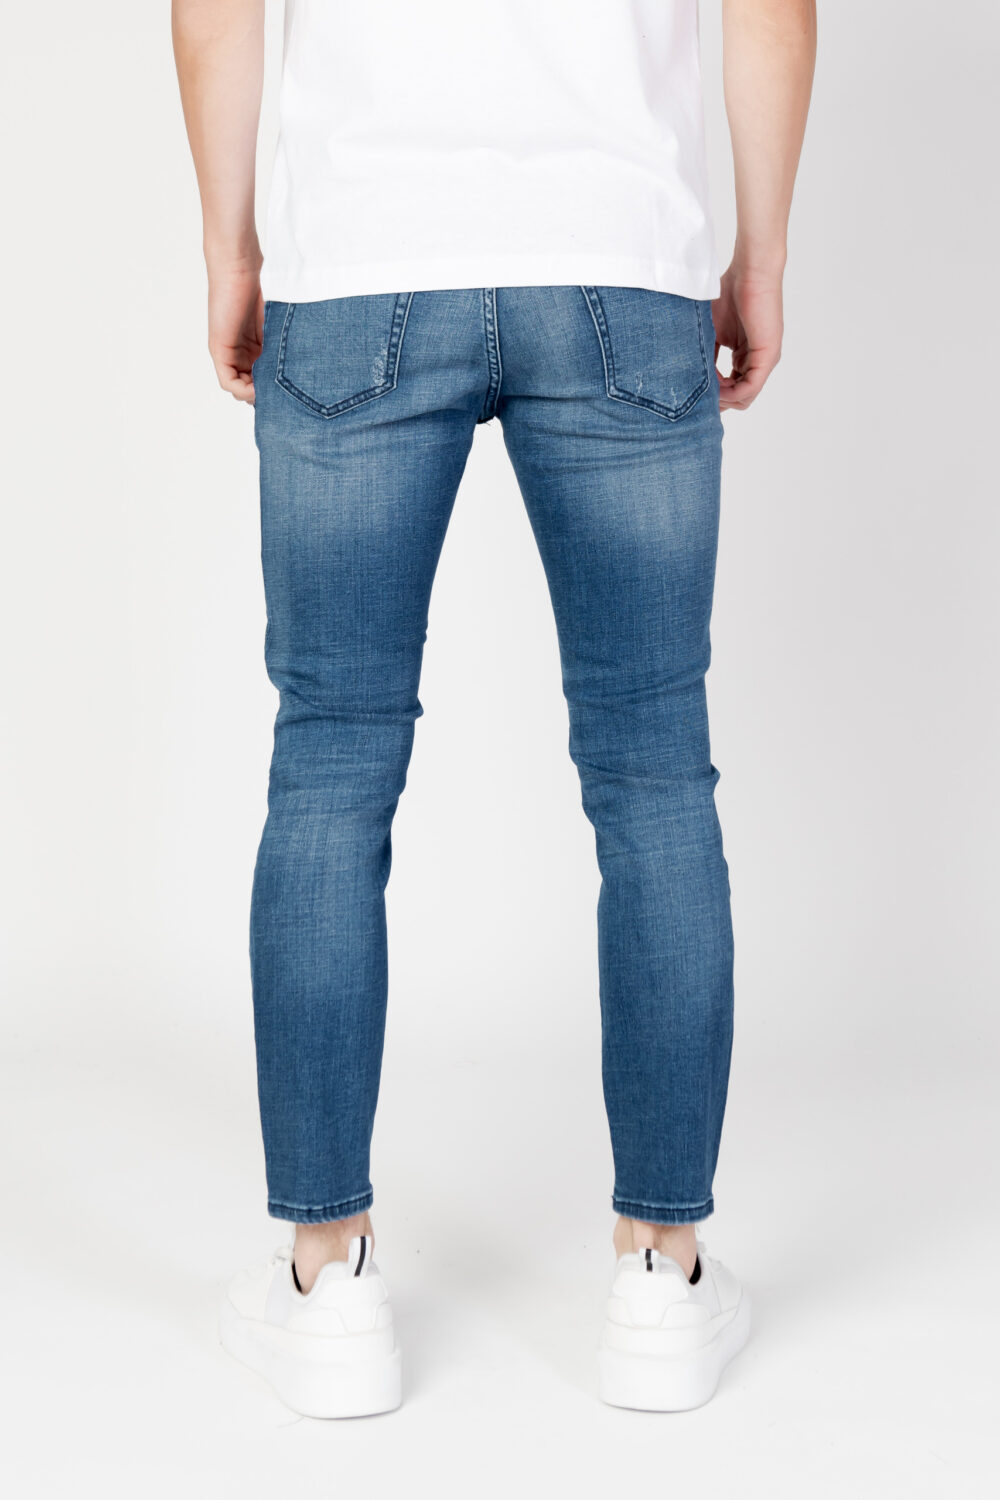 Jeans skinny Antony Morato karl skinny cropped fit Denim - Foto 3